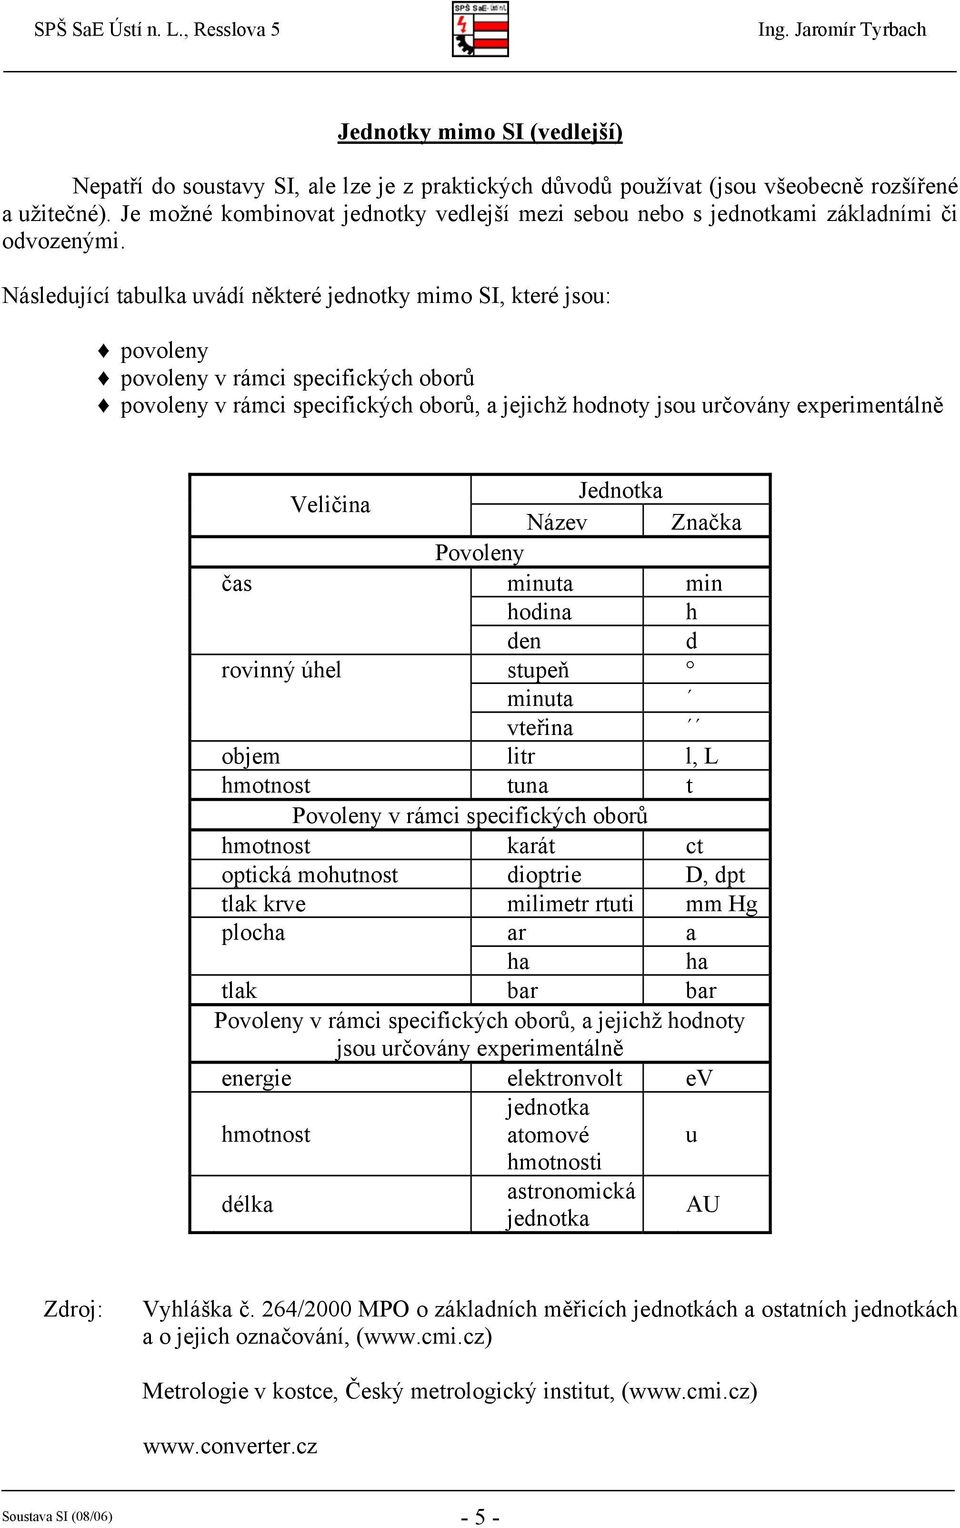 Následující tabulka uvádí některé jednotky io SI, které jsou: povoleny povoleny v ráci specifických oborů povoleny v ráci specifických oborů, a jejichž hodnoty jsou určovány experientálně Název